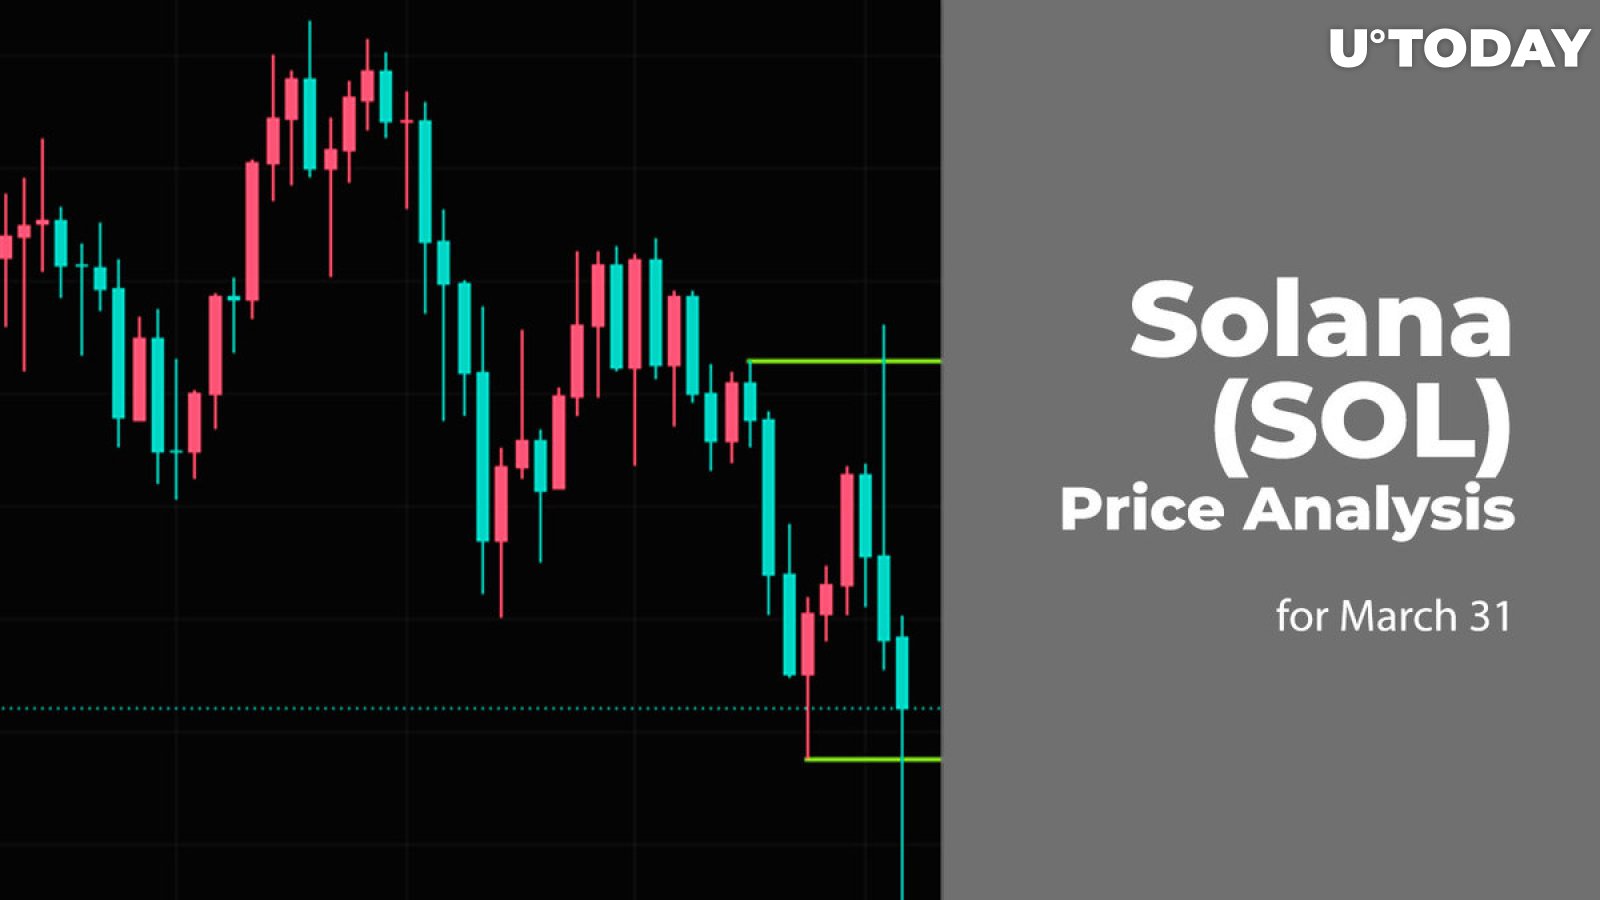 Solana (SOL) Price Prediction for March 31